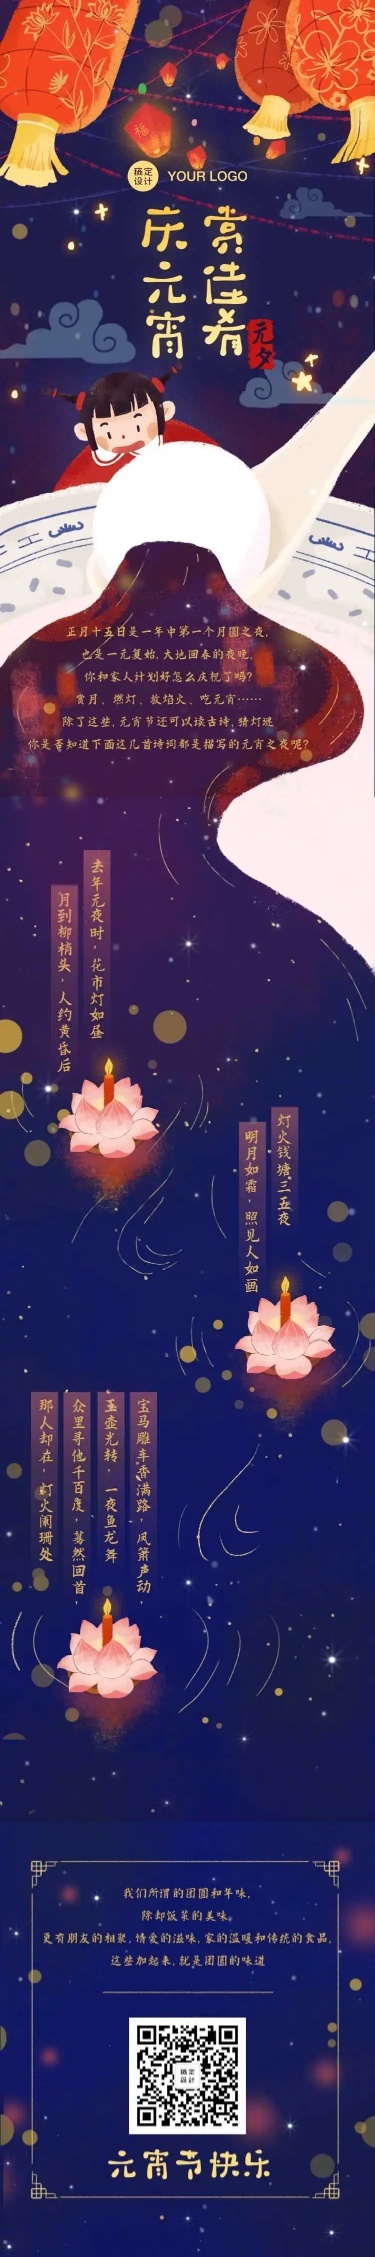 H5长页卡通中国风元宵节点花灯许愿祝福贺卡诗词